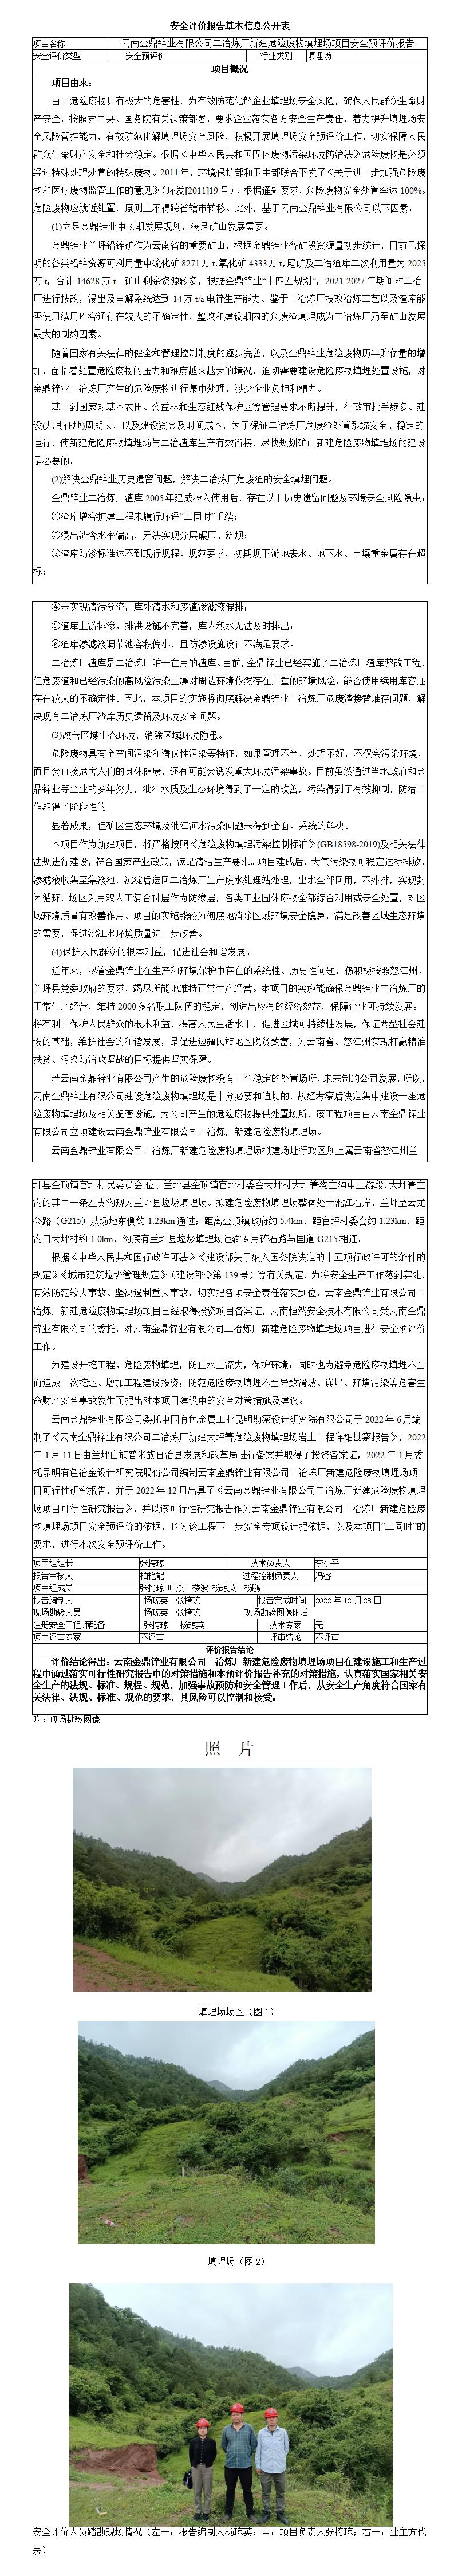 基本信息公开表云南金鼎锌业有限公司二冶炼厂